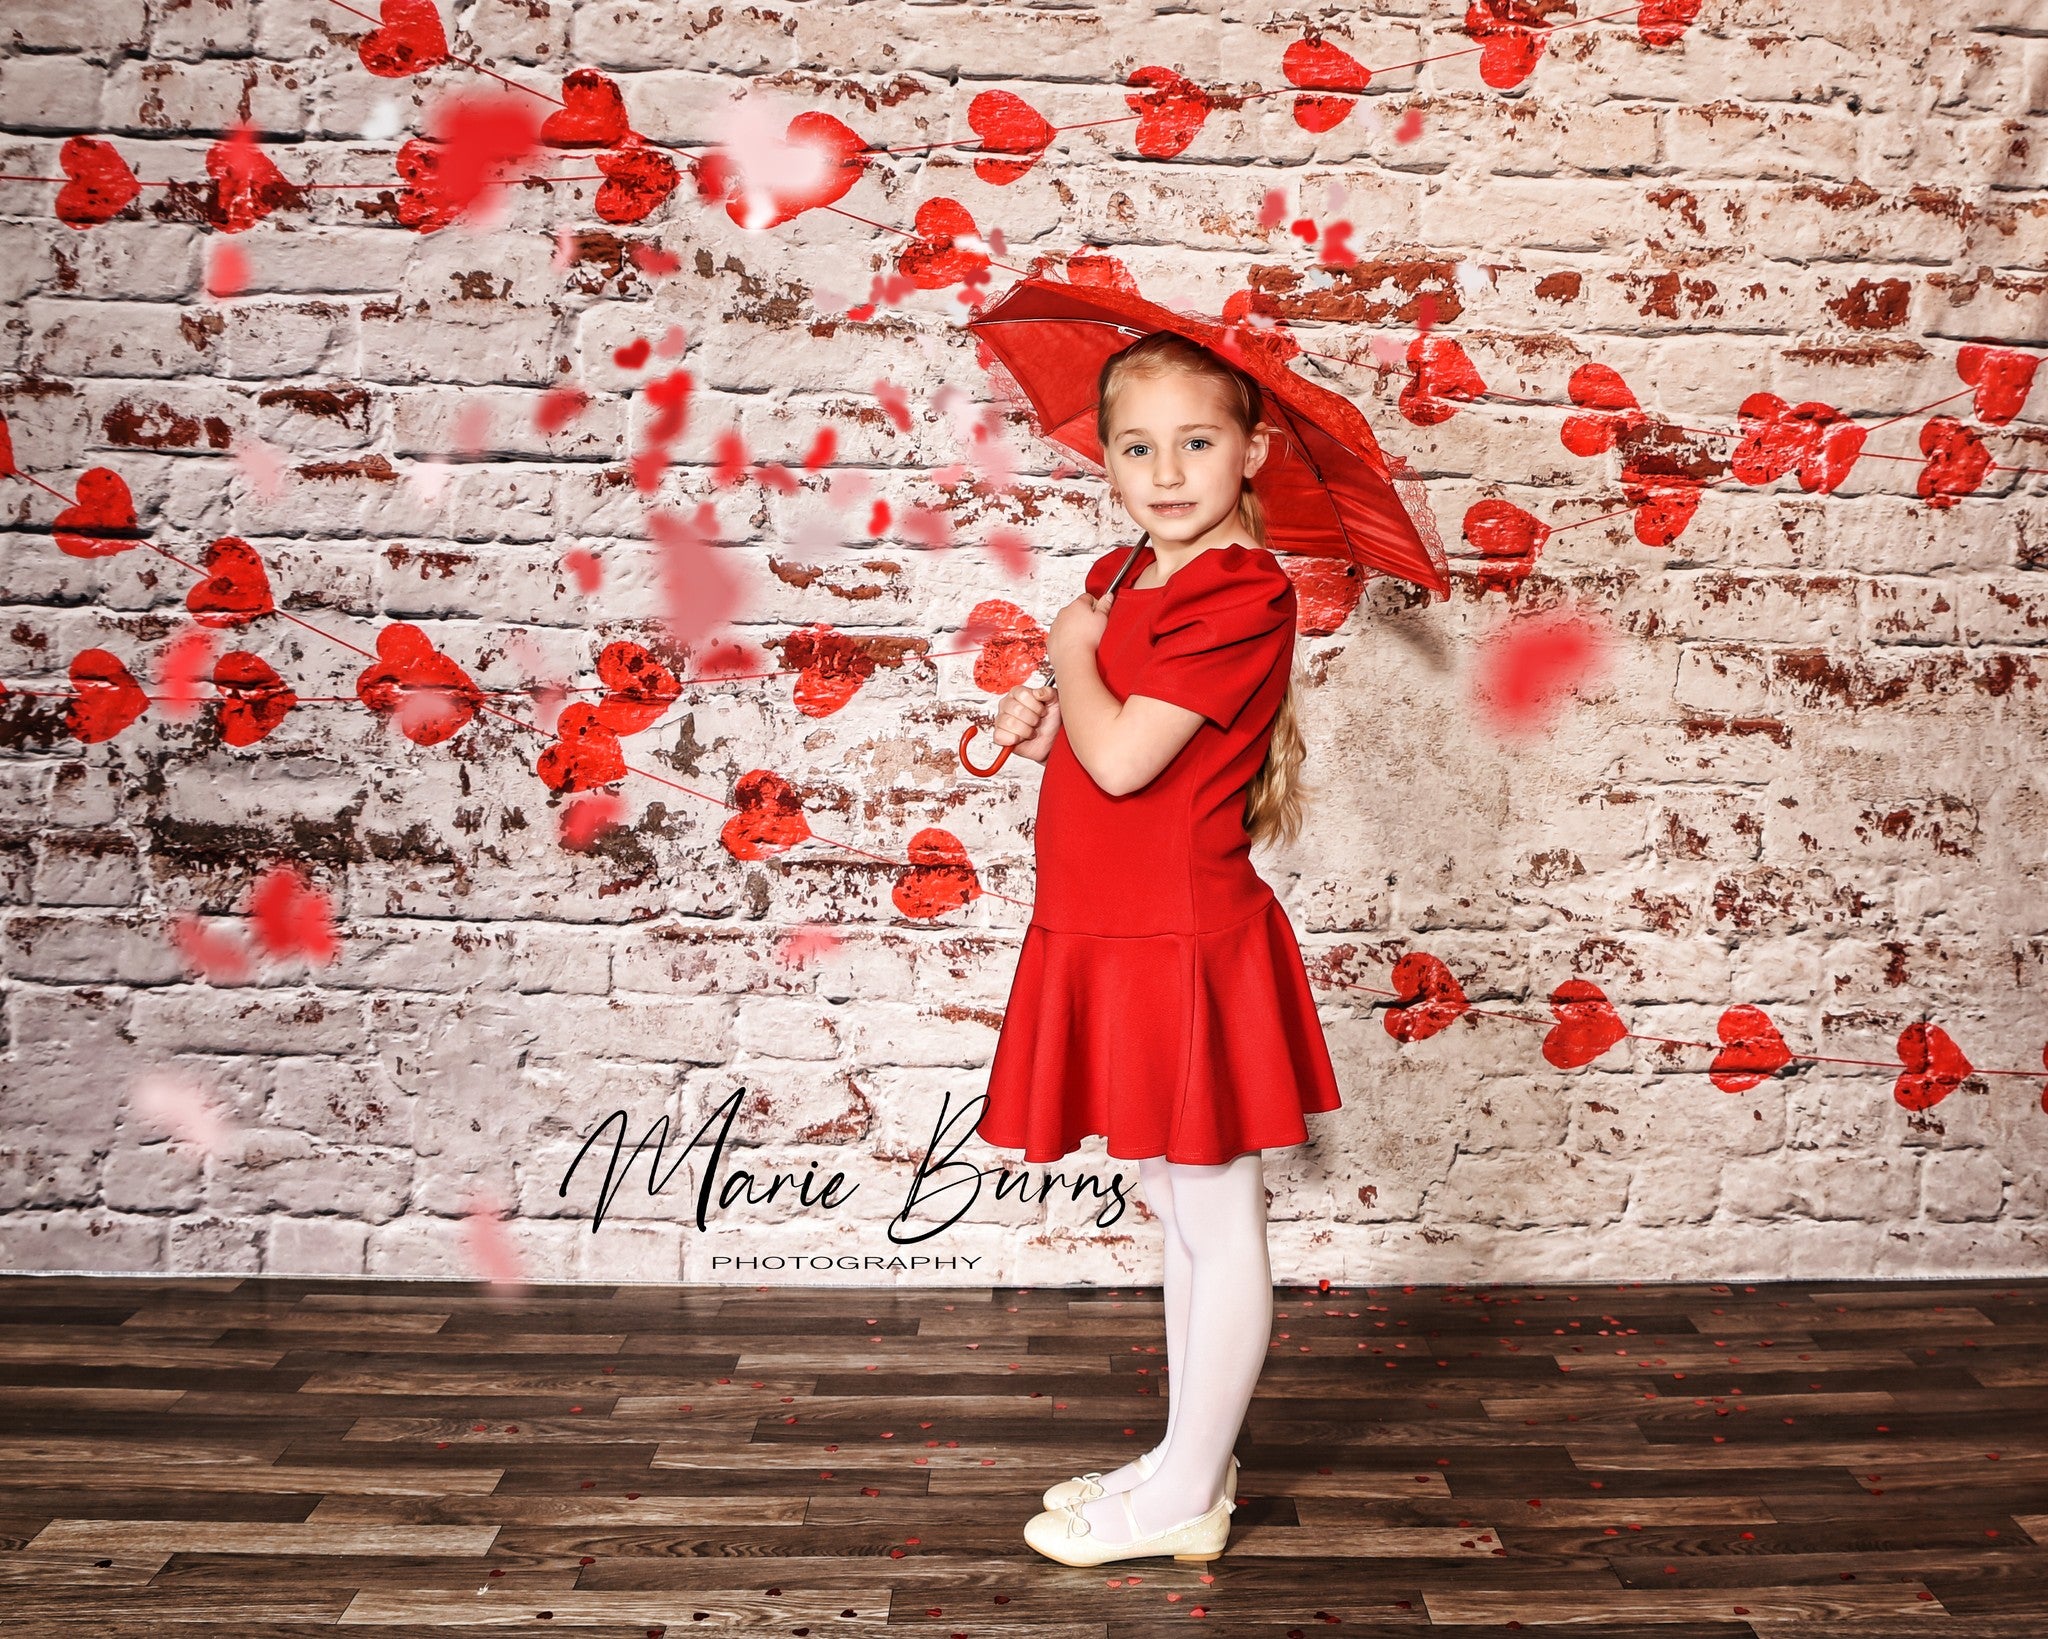 Kate Weiße Backsteinmauer mit roten Herzen Valentinstag-Hintergrund für die Fotografie entworfen von Jerry_Sina